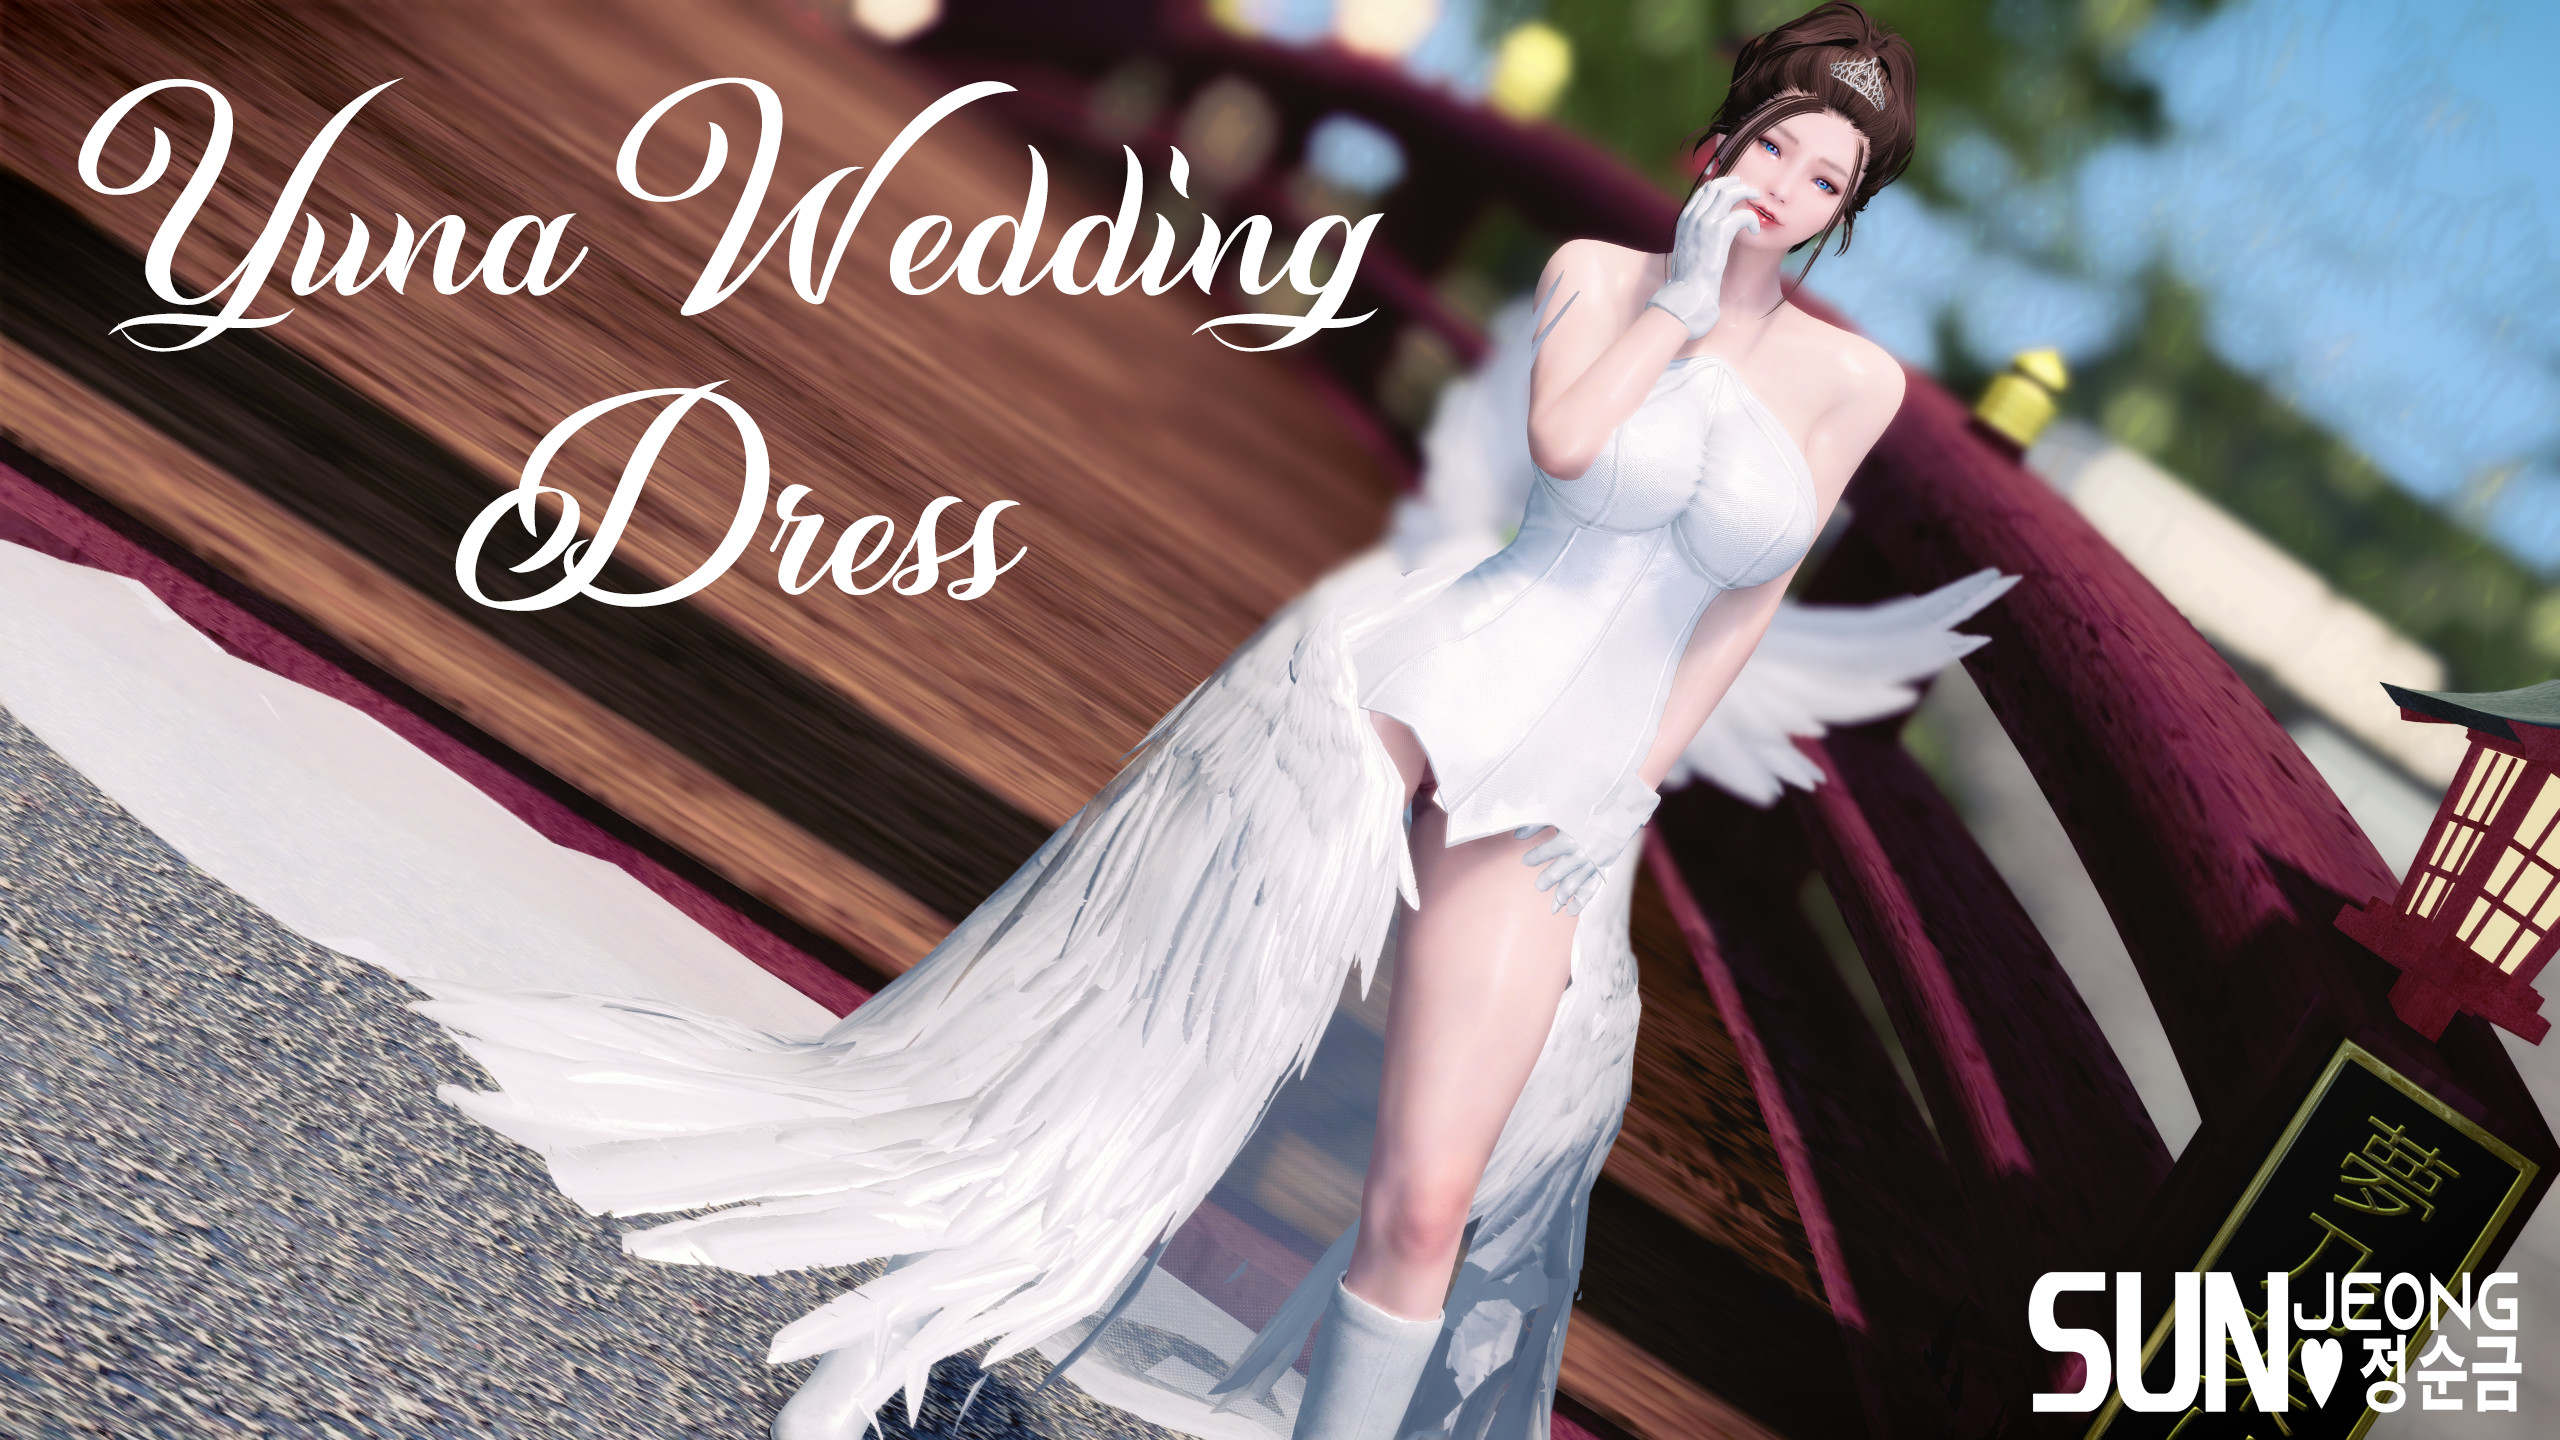 Yuna Wedding Dress